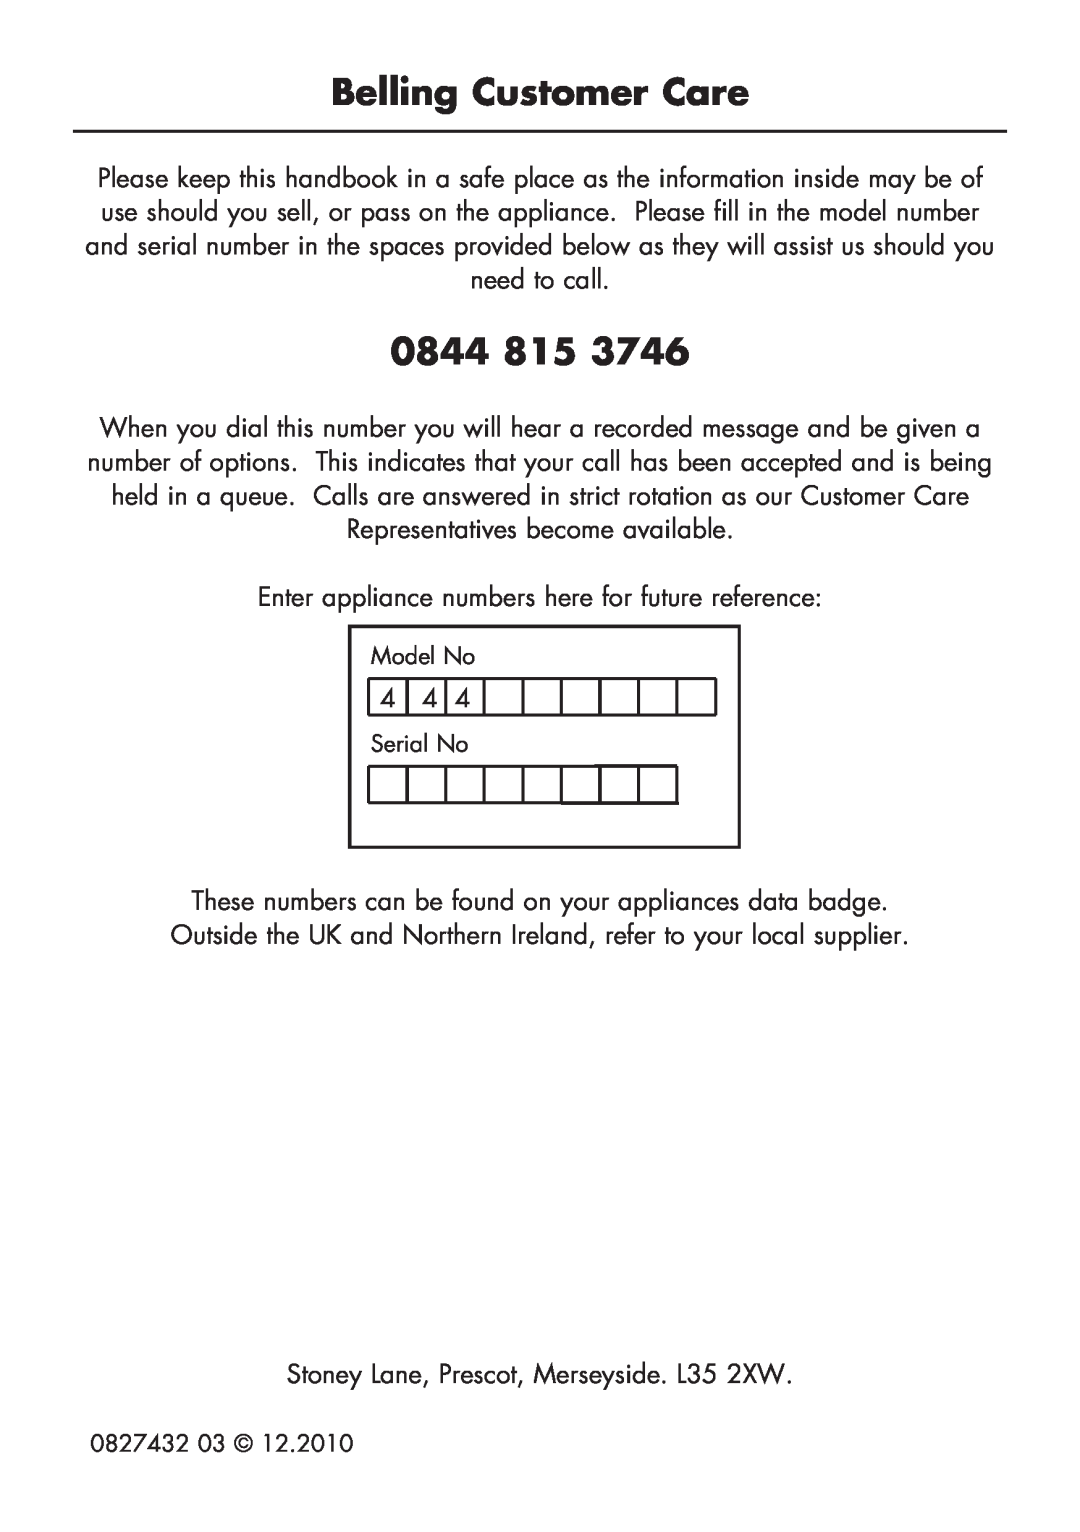 Glen Dimplex Home Appliances Ltd BI 70 G manual Belling Customer Care, 0844 815 